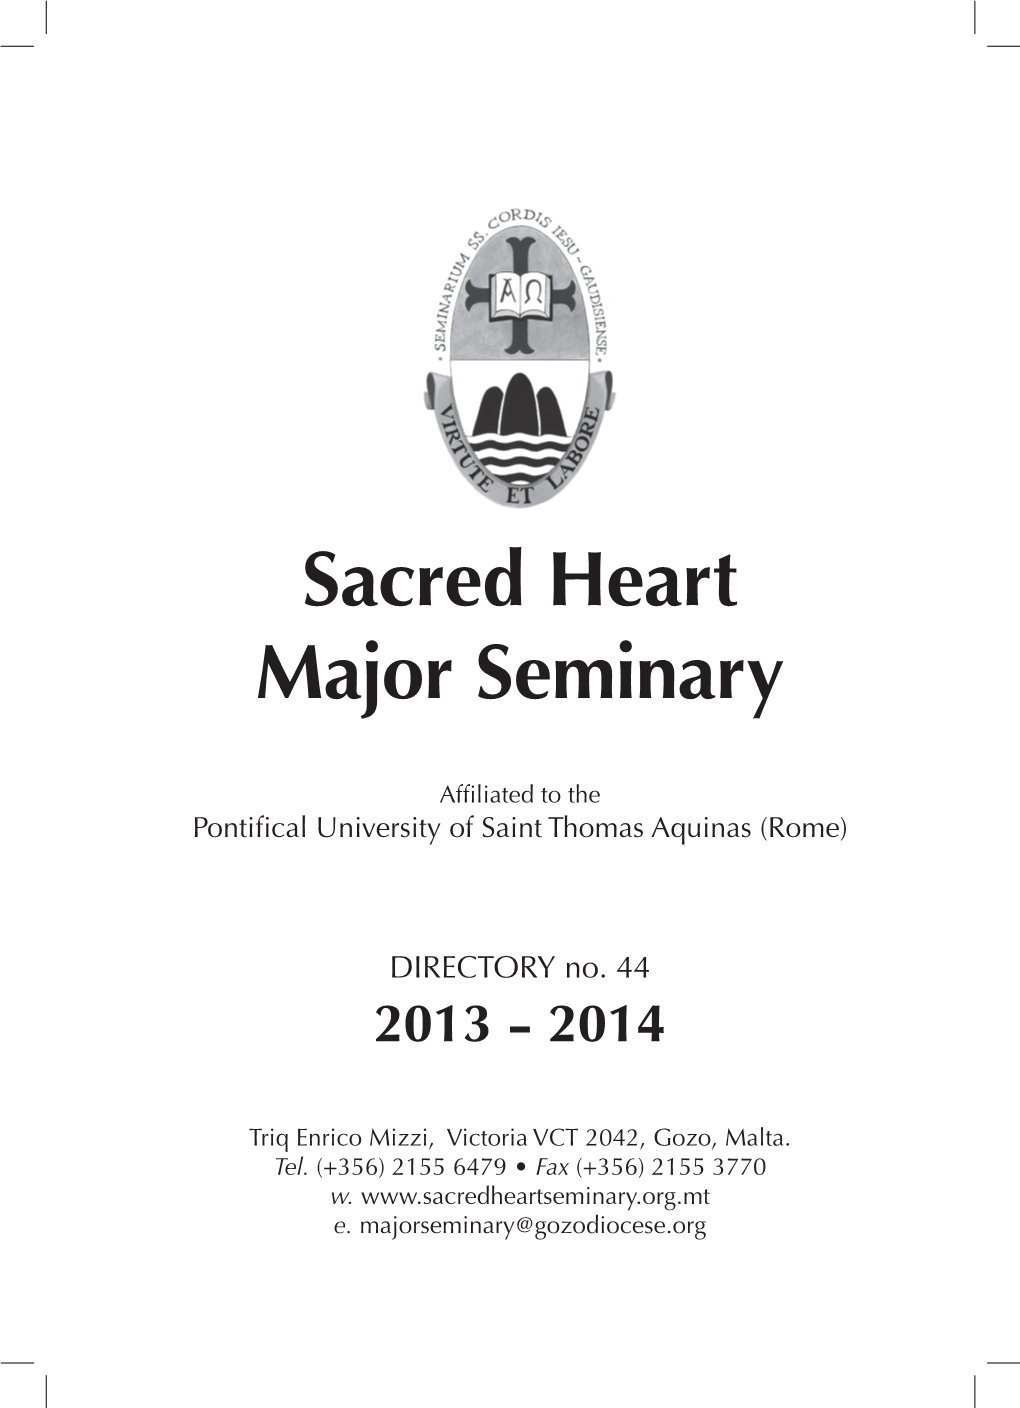 Sacred Heart Major Seminary